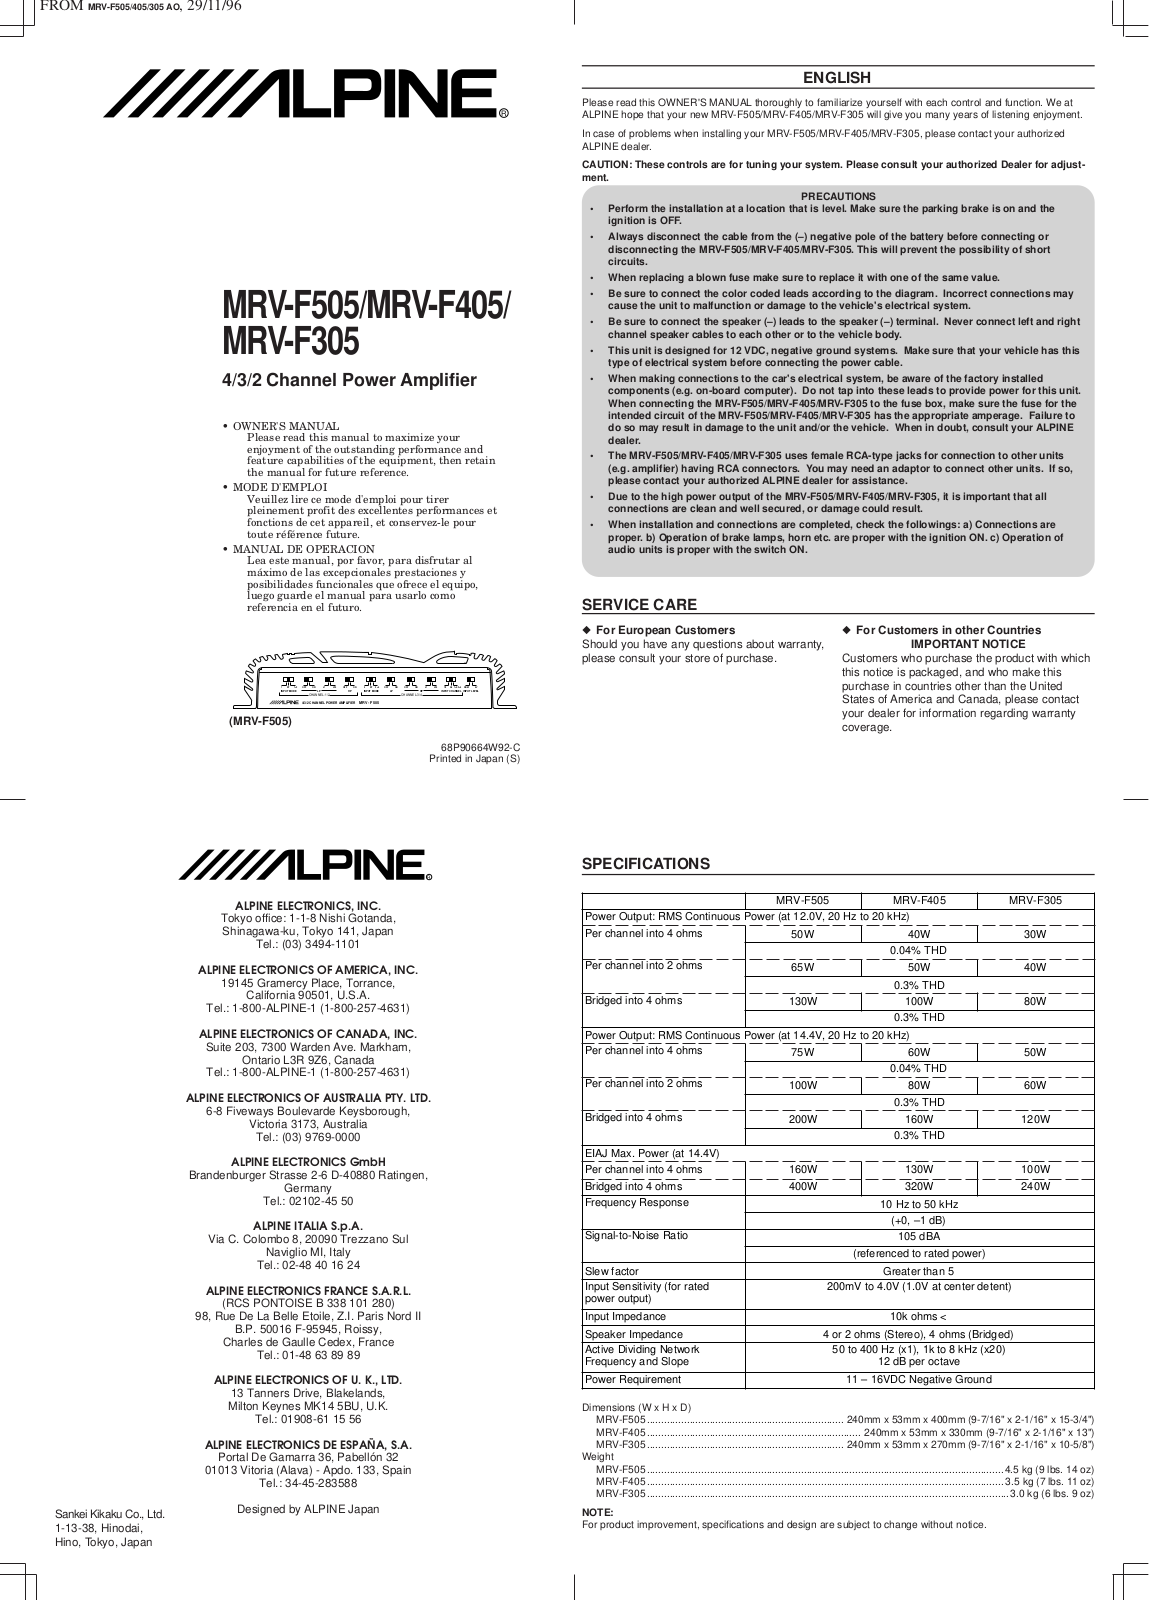 Alpine MRV-F505 Manual